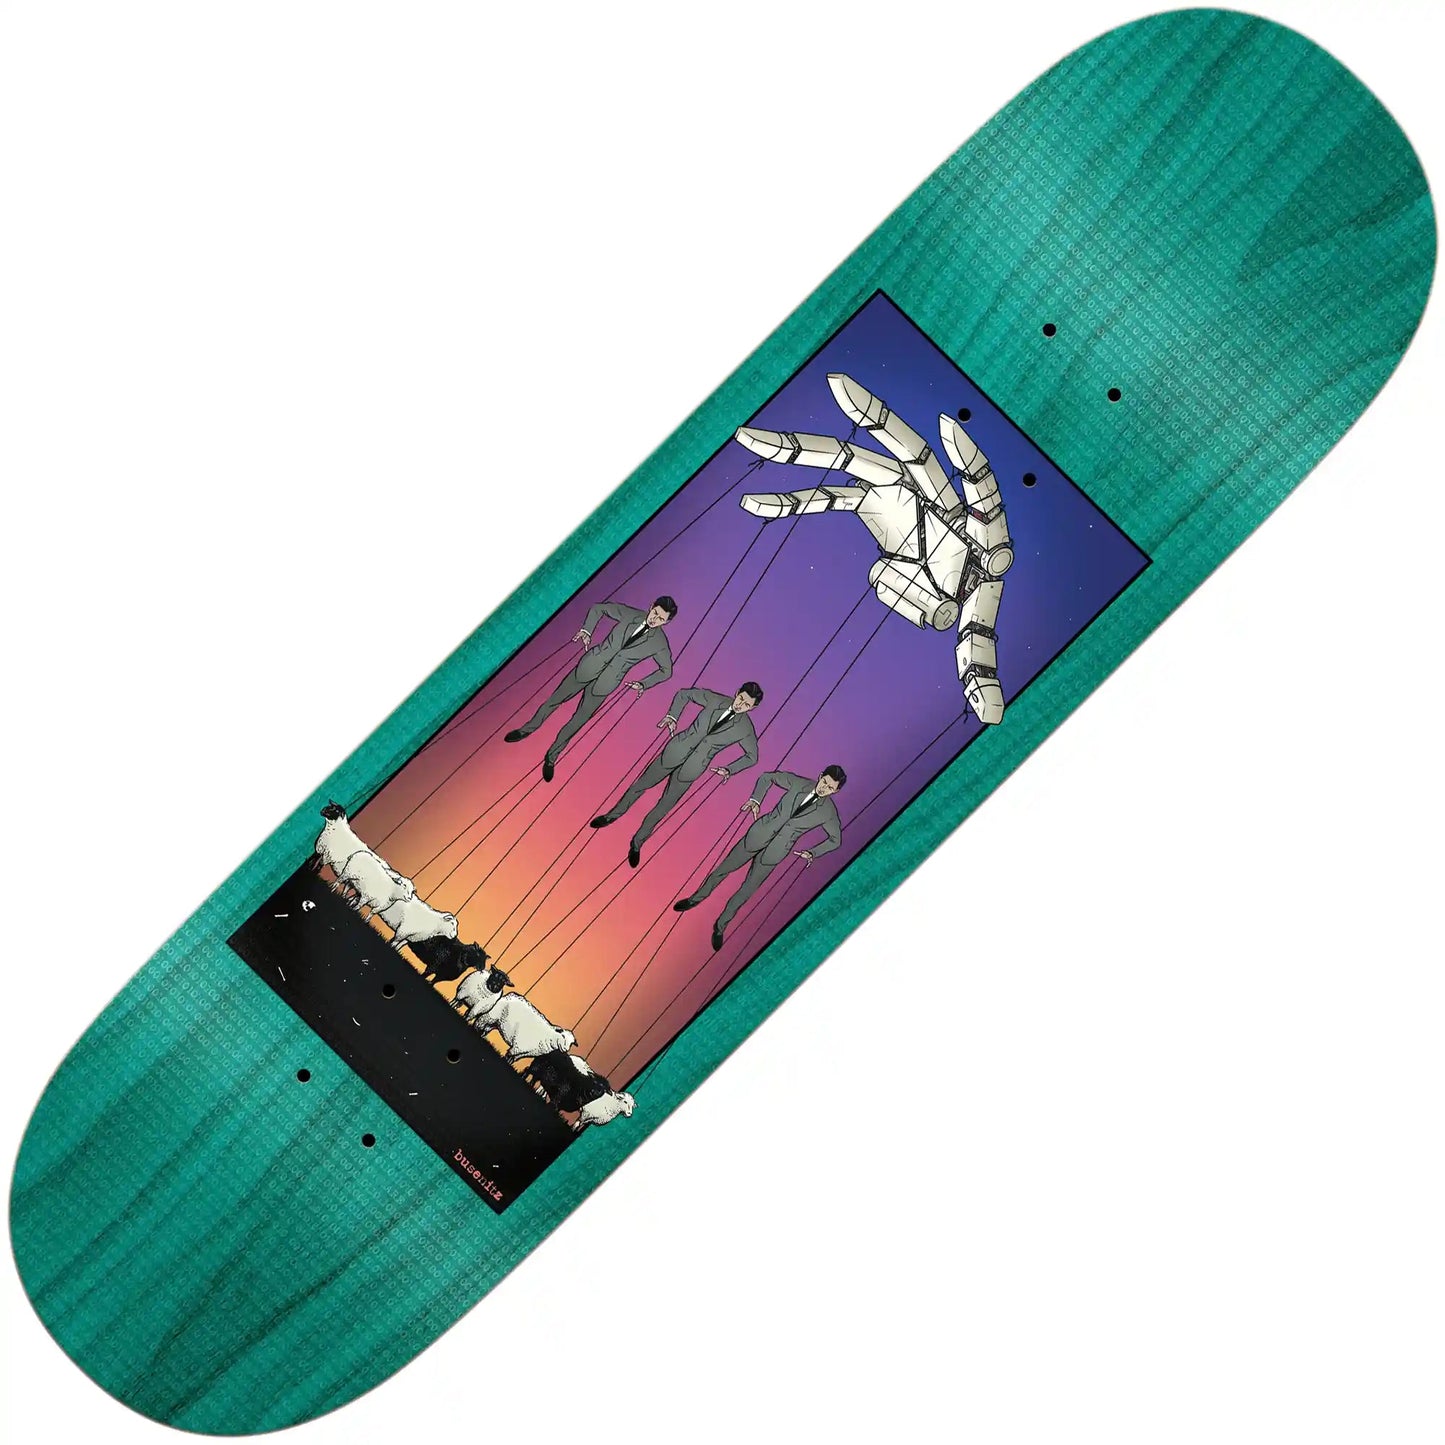 Real Busenitz Overlord Full SE Deck (8.5”) - Tiki Room Skateboards - 1